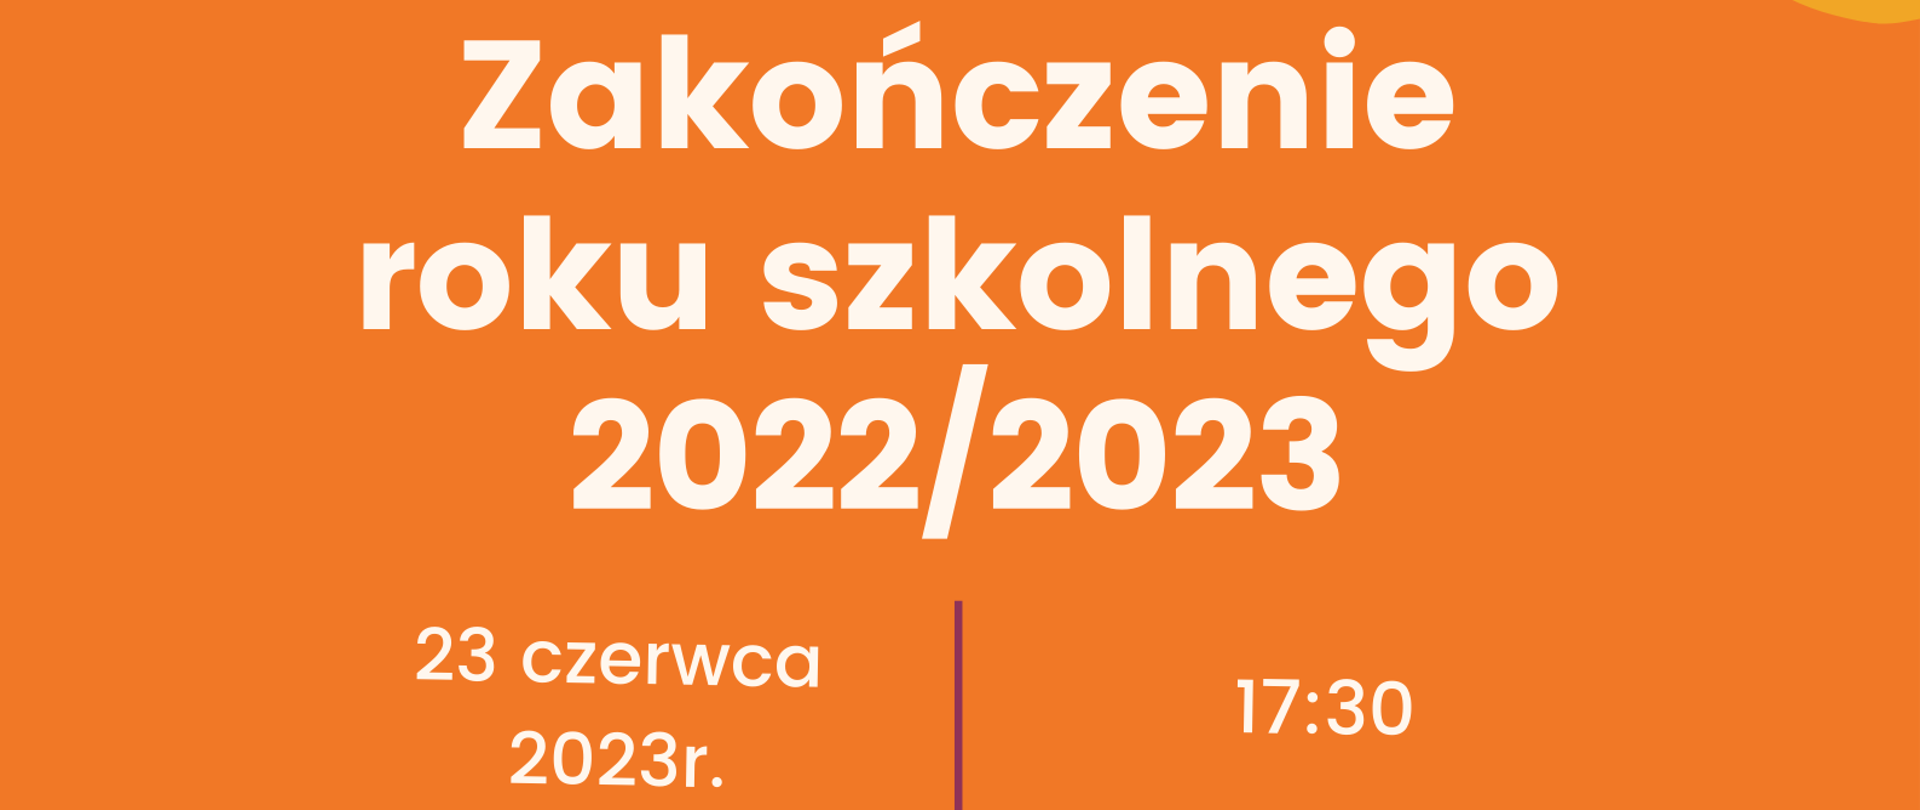 Na pomarańczowym tle białymi literami informacja o zakończeniu roku szkolnego 2022/2023